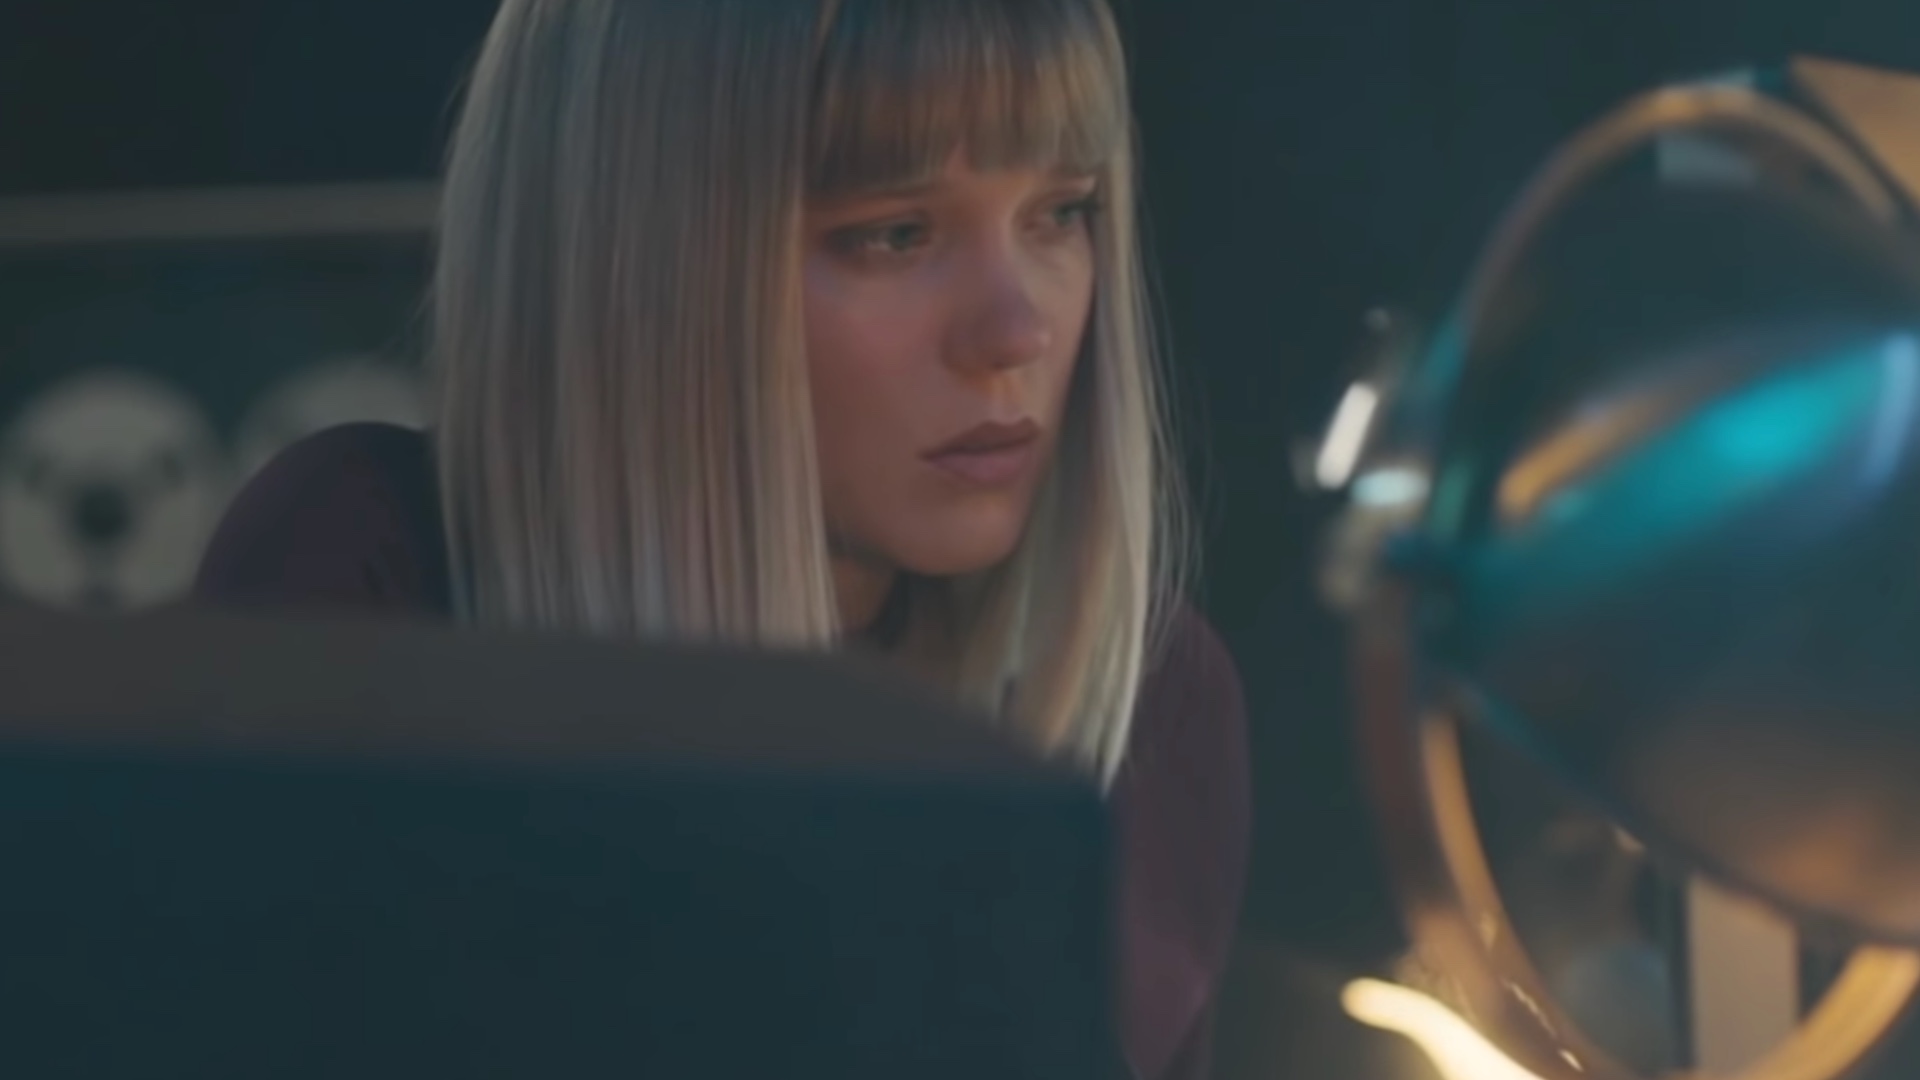 LeA Seydoux In Zoe Movie 2018 Wallpapers